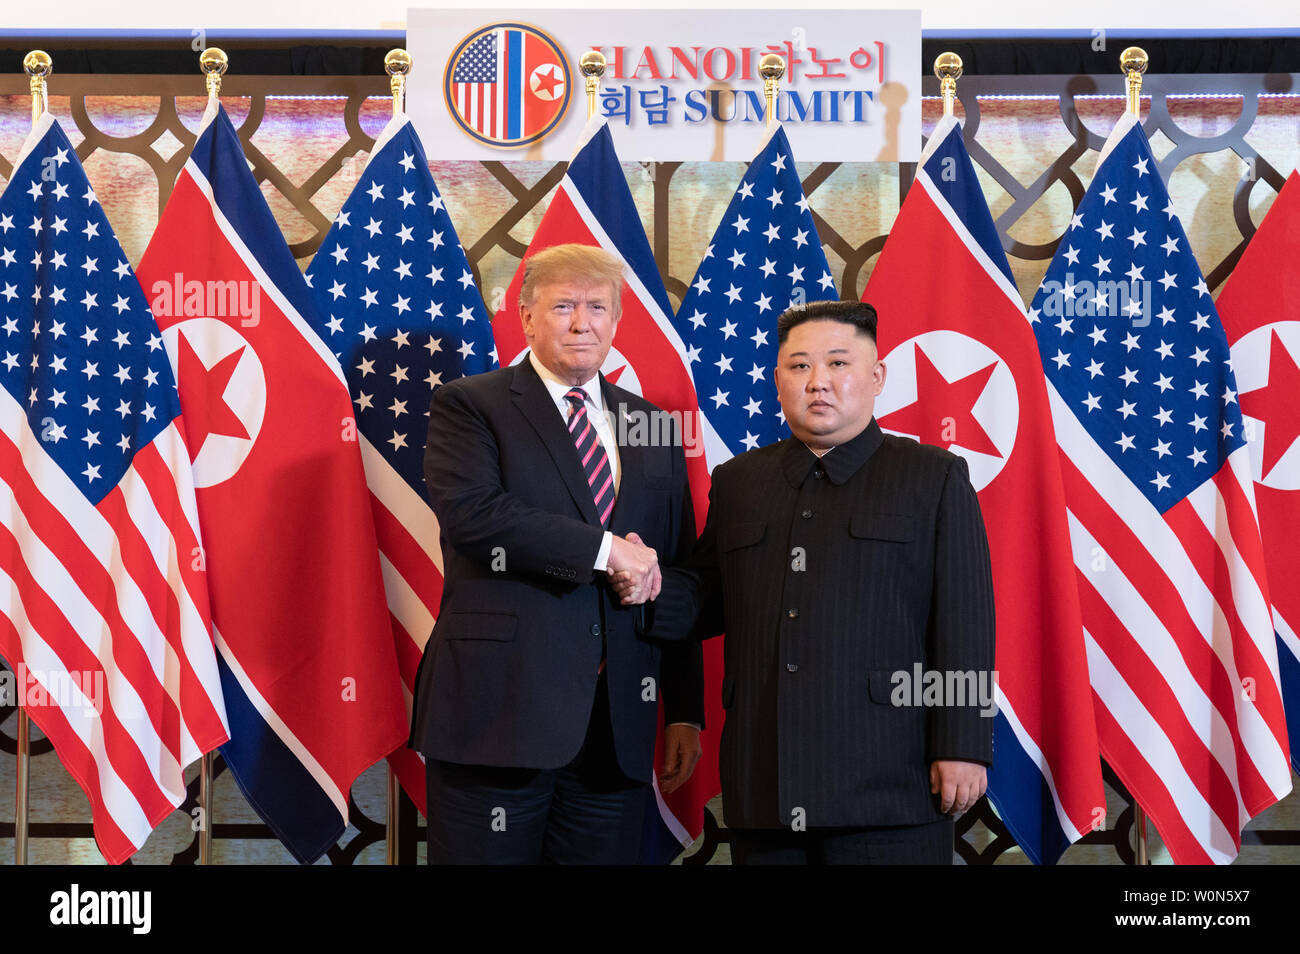 Presidente Trump è accolto da Kim Jong Onu, Presidente del membro commissione degli affari esteri della Repubblica Popolare Democratica di Corea, il 27 febbraio 2019, presso il Sofitel Legend Metropole hotel di Hanoi, per la loro seconda riunione al vertice. White House Foto di Shealah Central Plaza Hotel/UPI Foto Stock